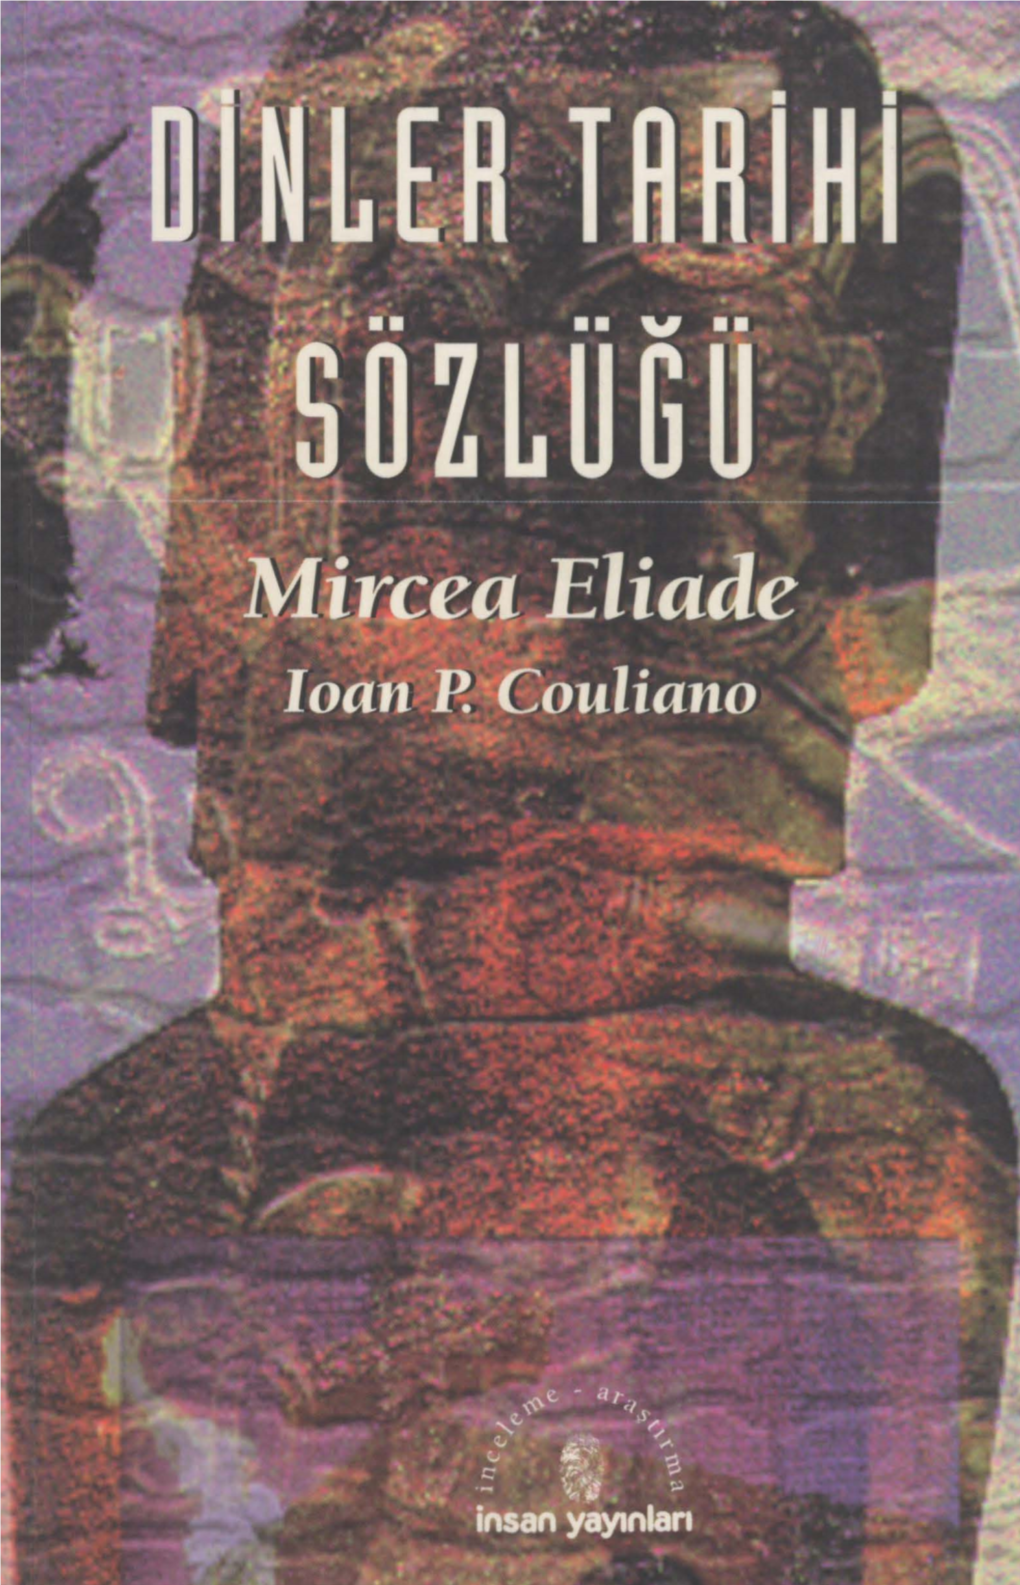 Dinler Tarihi Sözlüğü-Mircea Eliadc - Ioan P